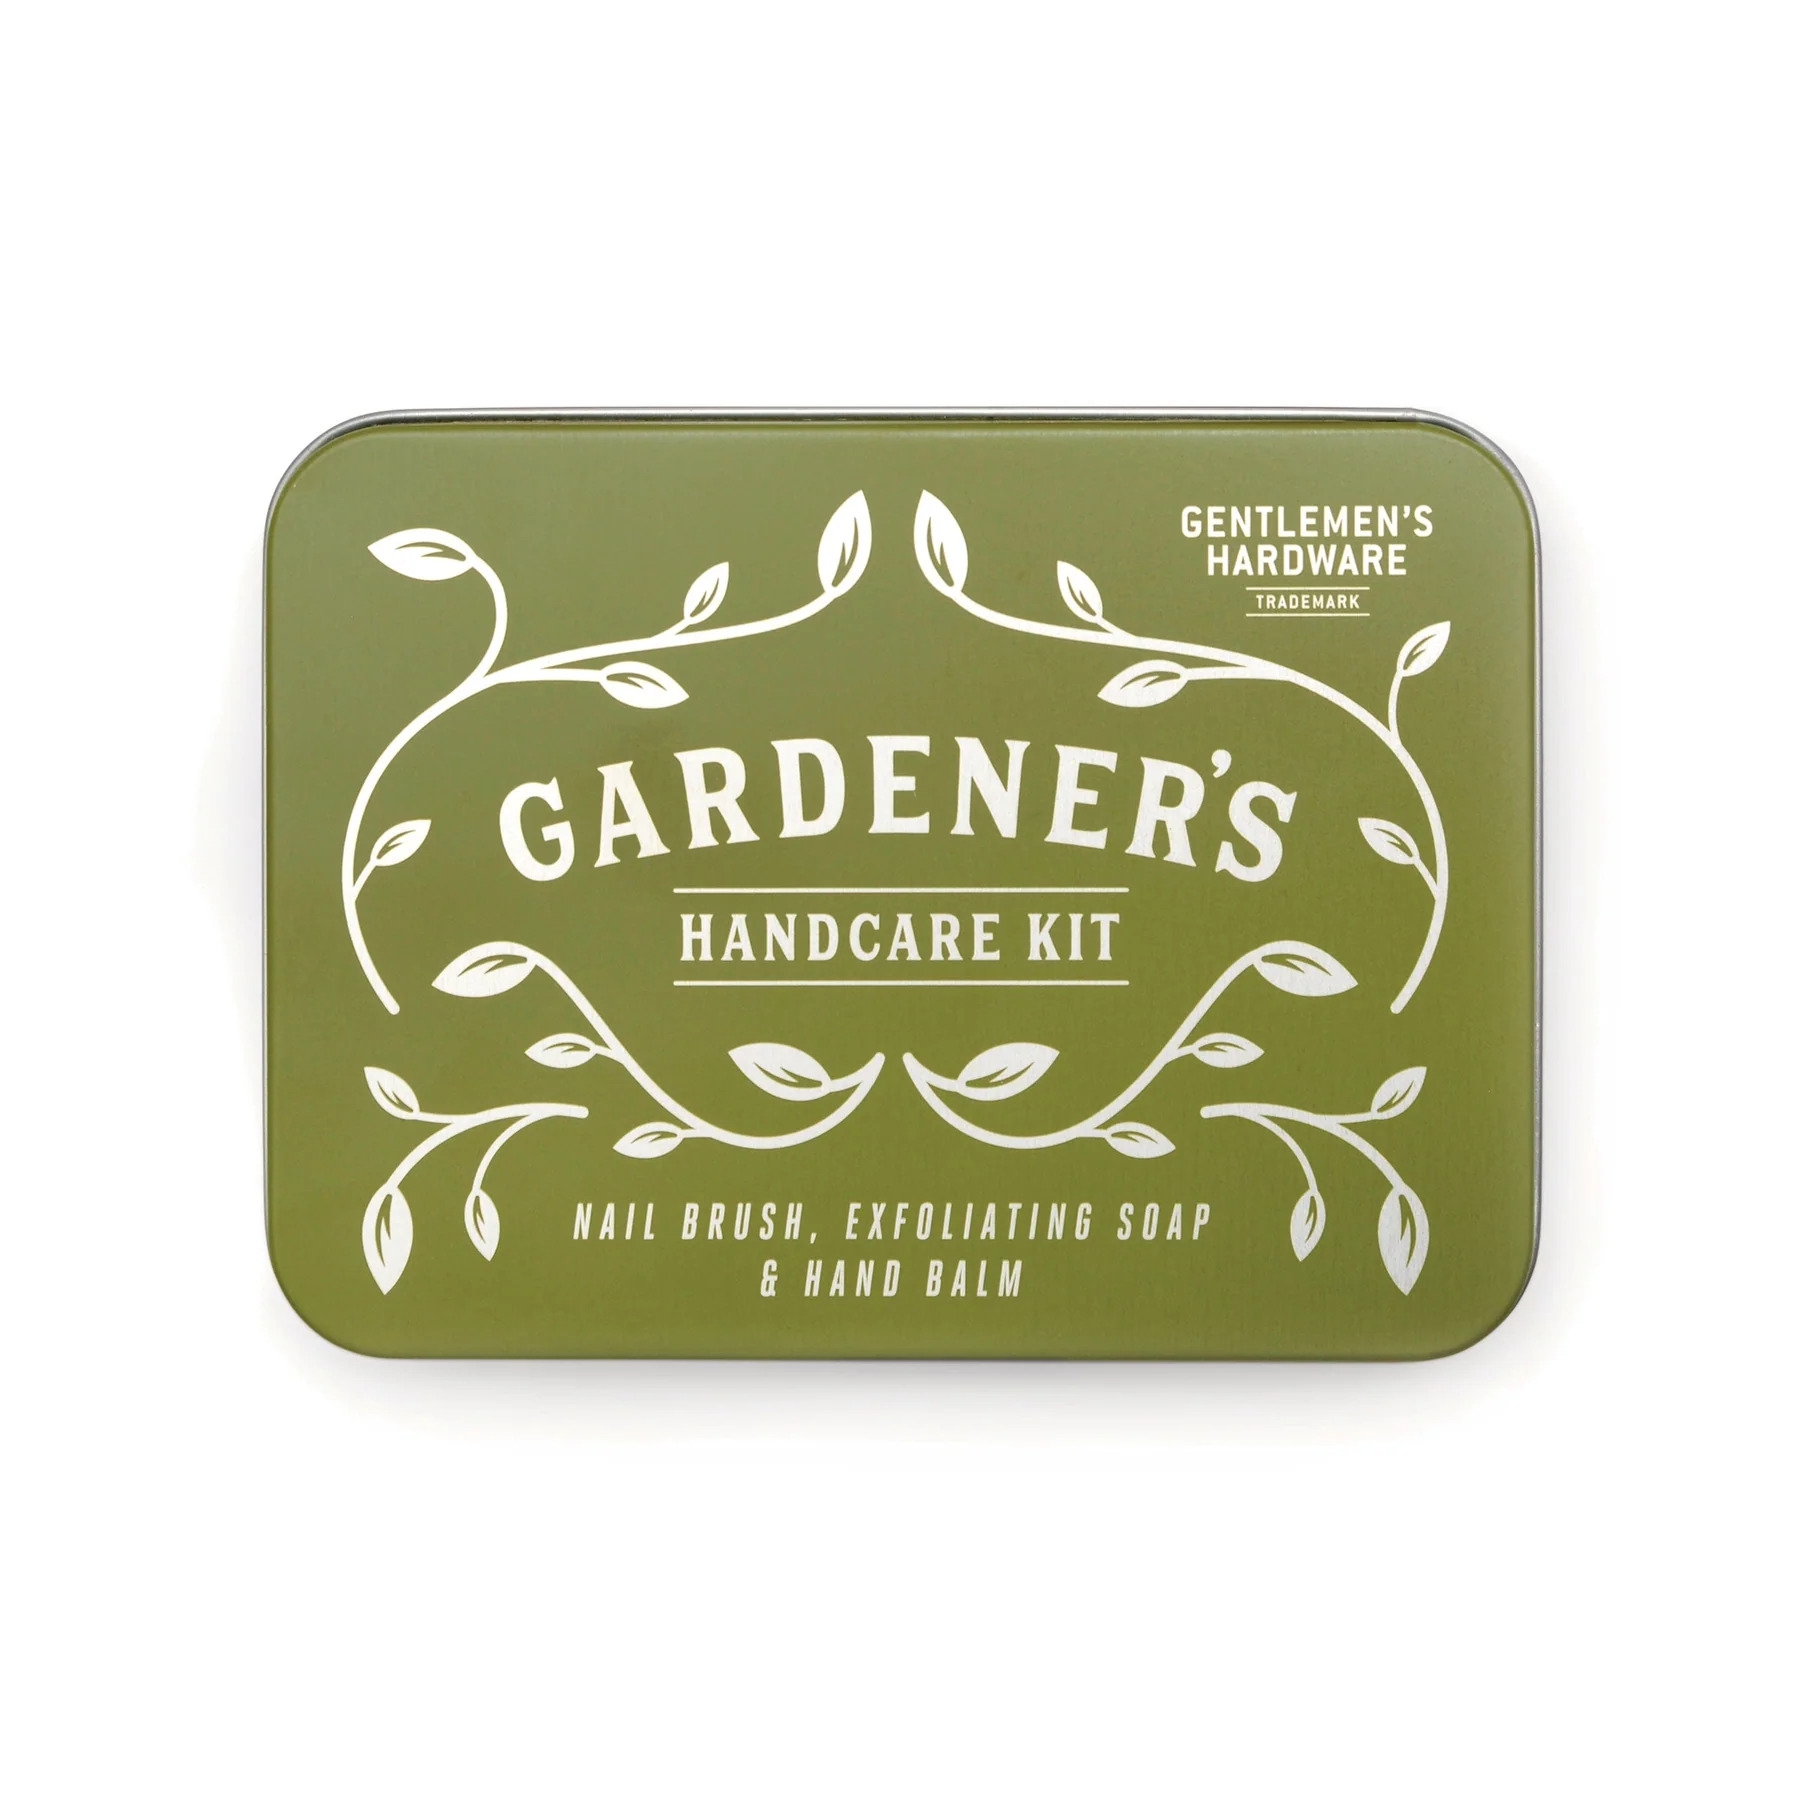 Gentlemen's Hardware Gardener's Handcare Kit